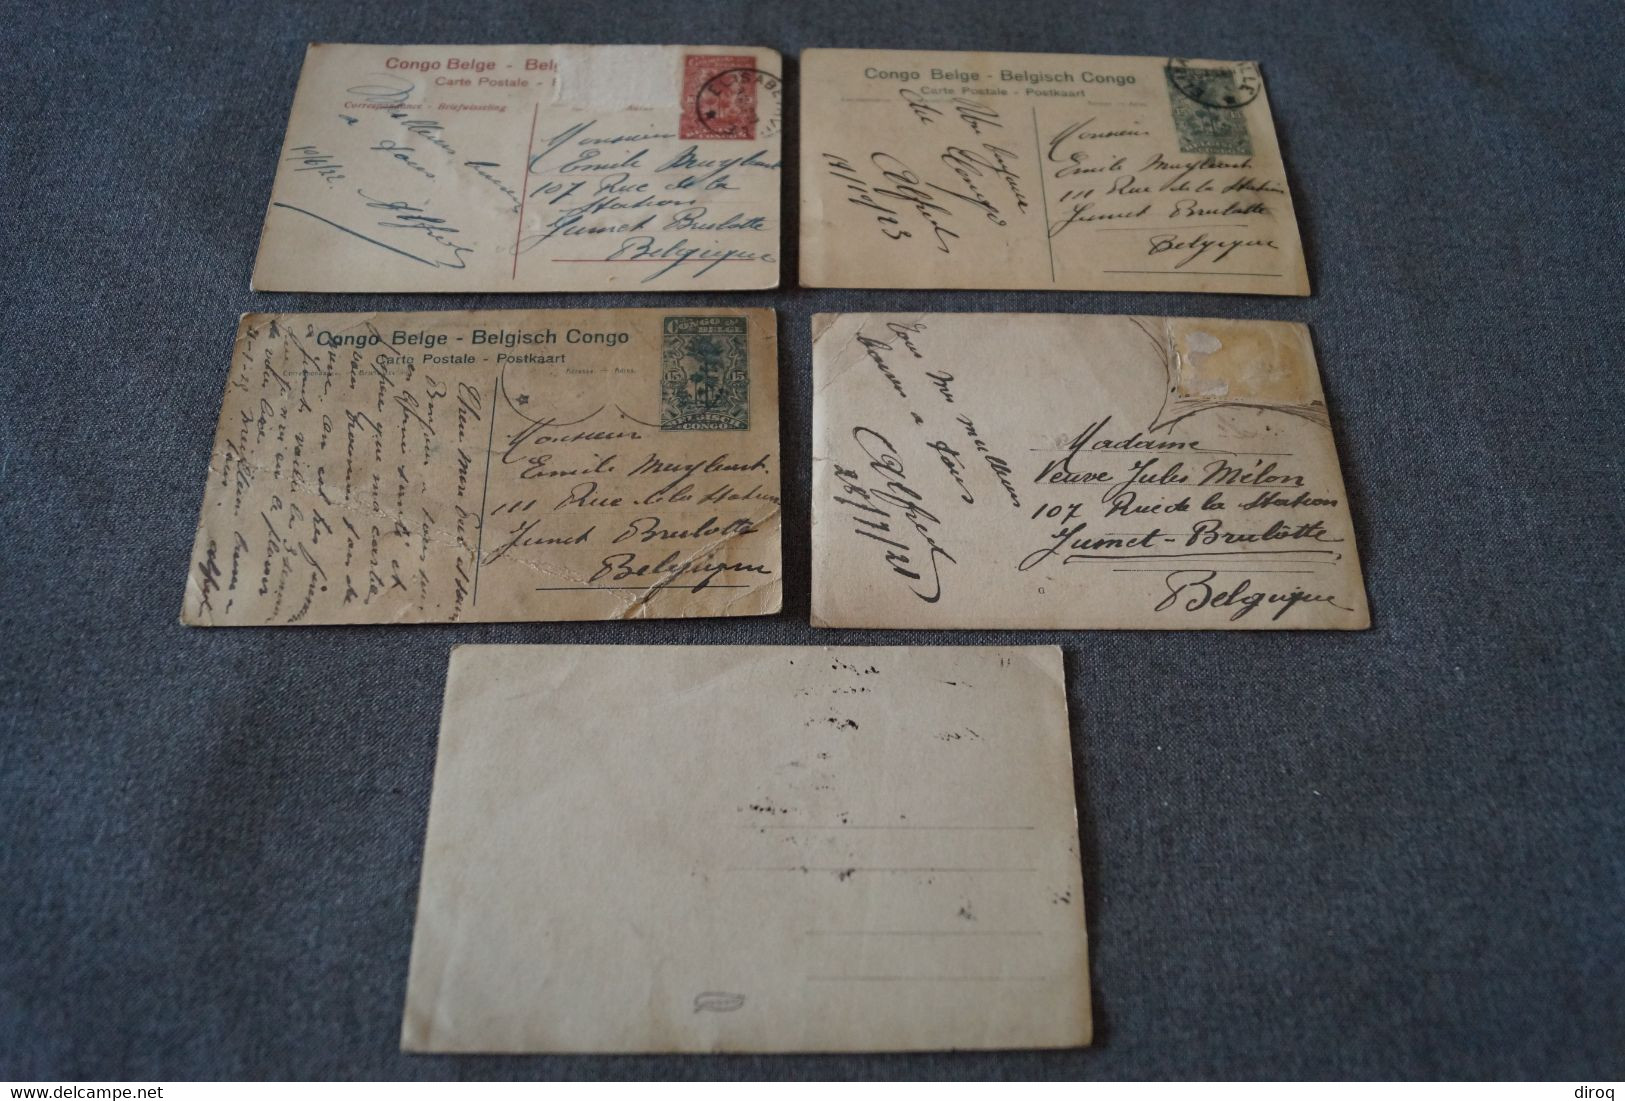 Lot De 5 Anciennes Cartes Postales Congo Belge, Elisabethville - Congo Belga